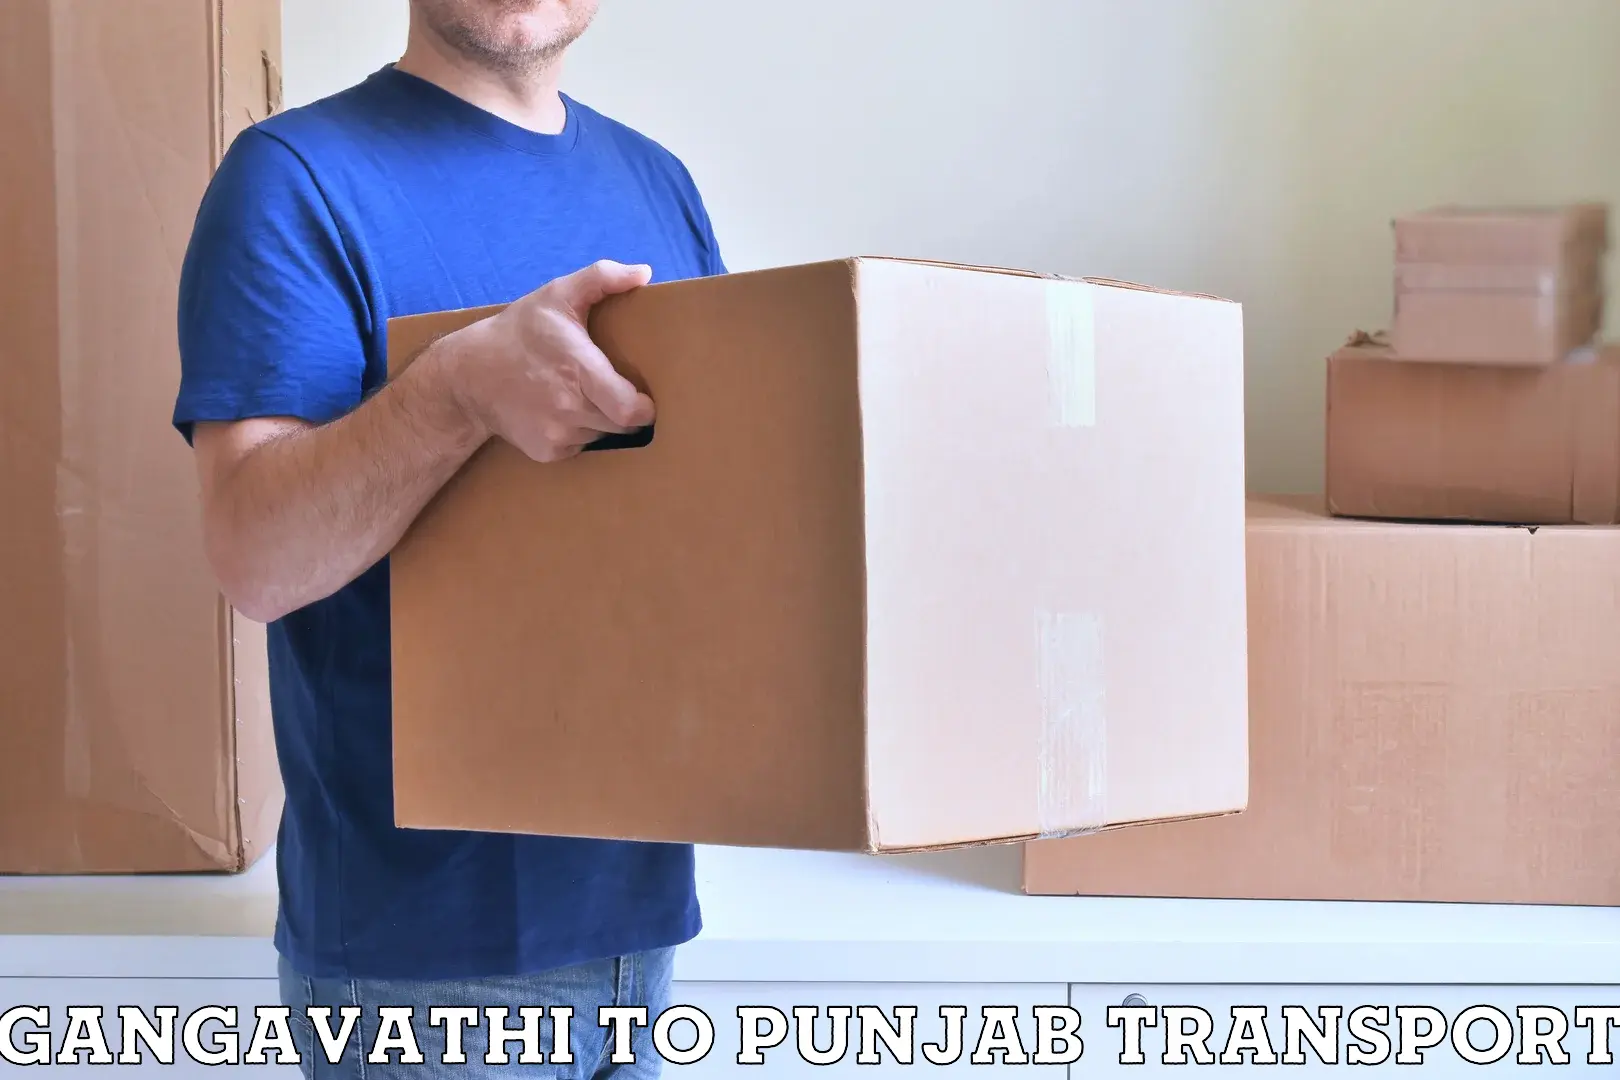 Furniture transport service Gangavathi to Rupnagar